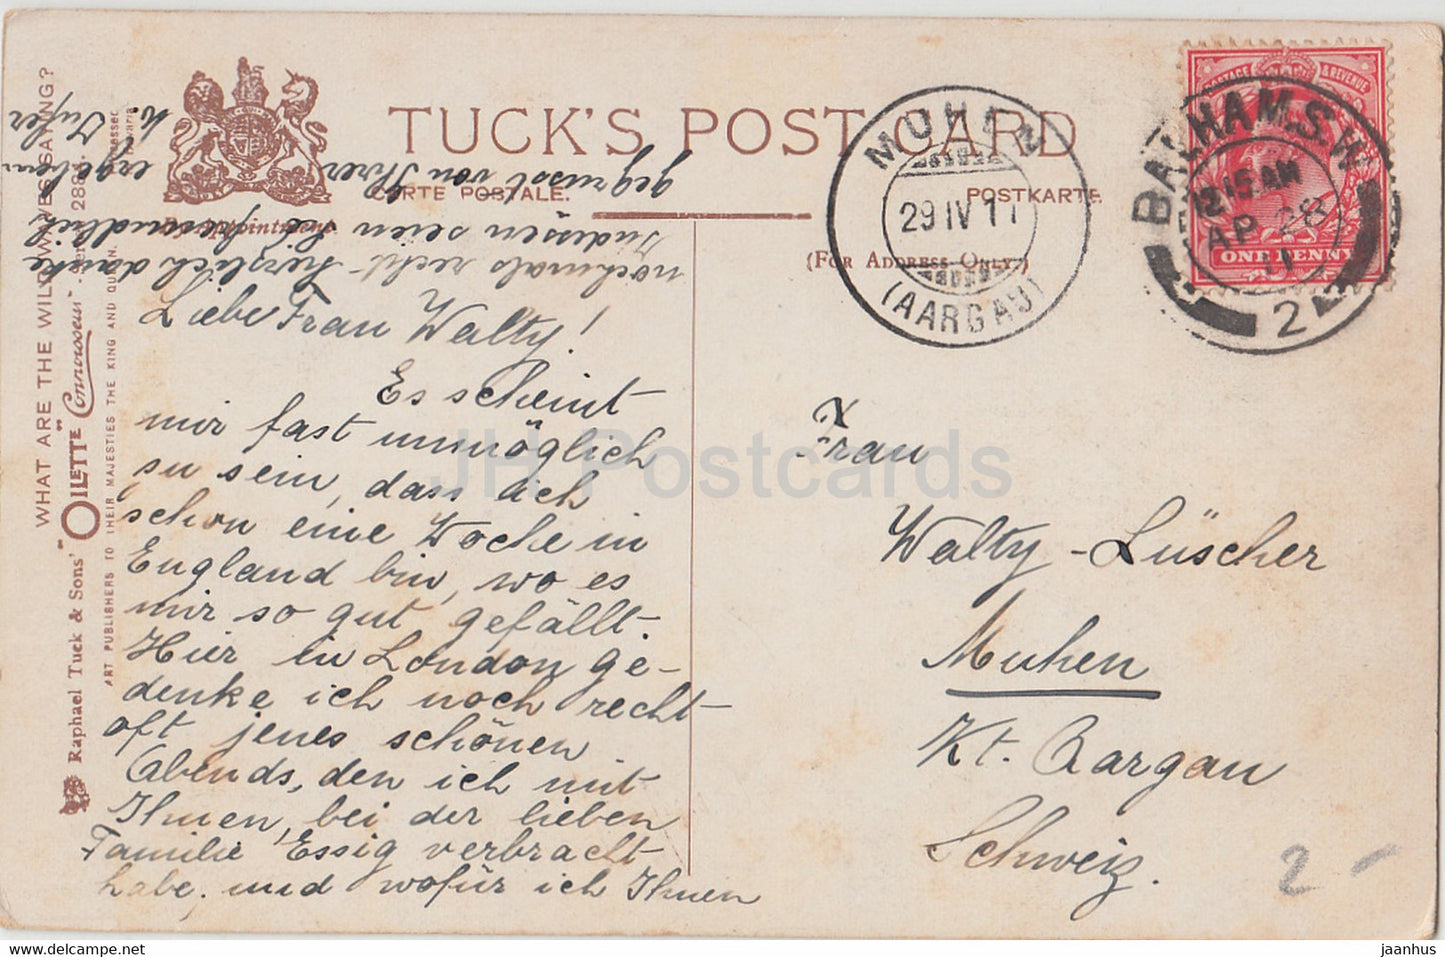 Stürmische See – Raphael Tuck – Oilette – 2884 – alte Postkarte – 1911 – Vereinigtes Königreich – gebraucht